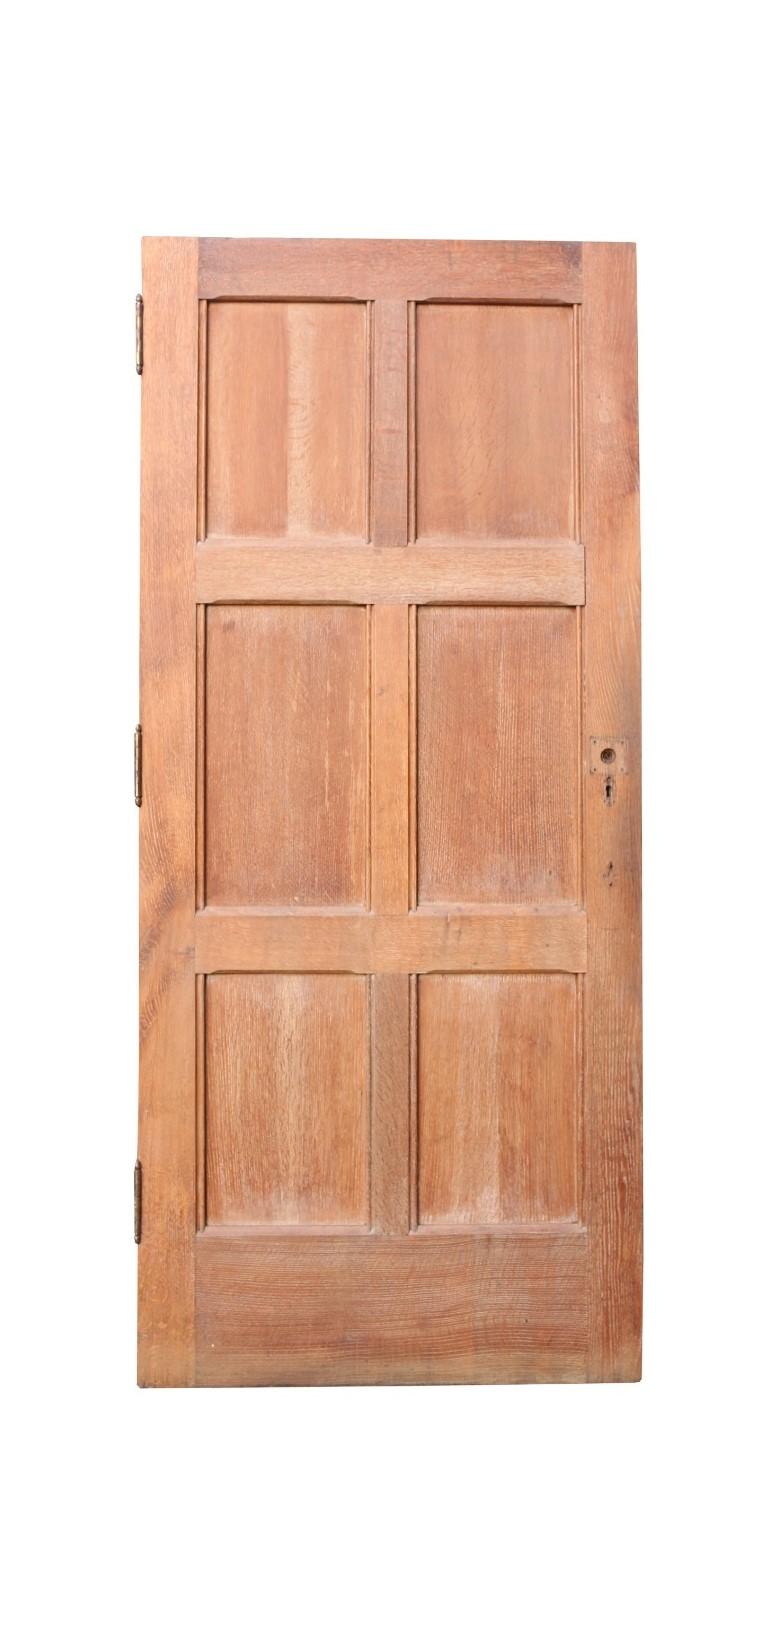 six panel front door